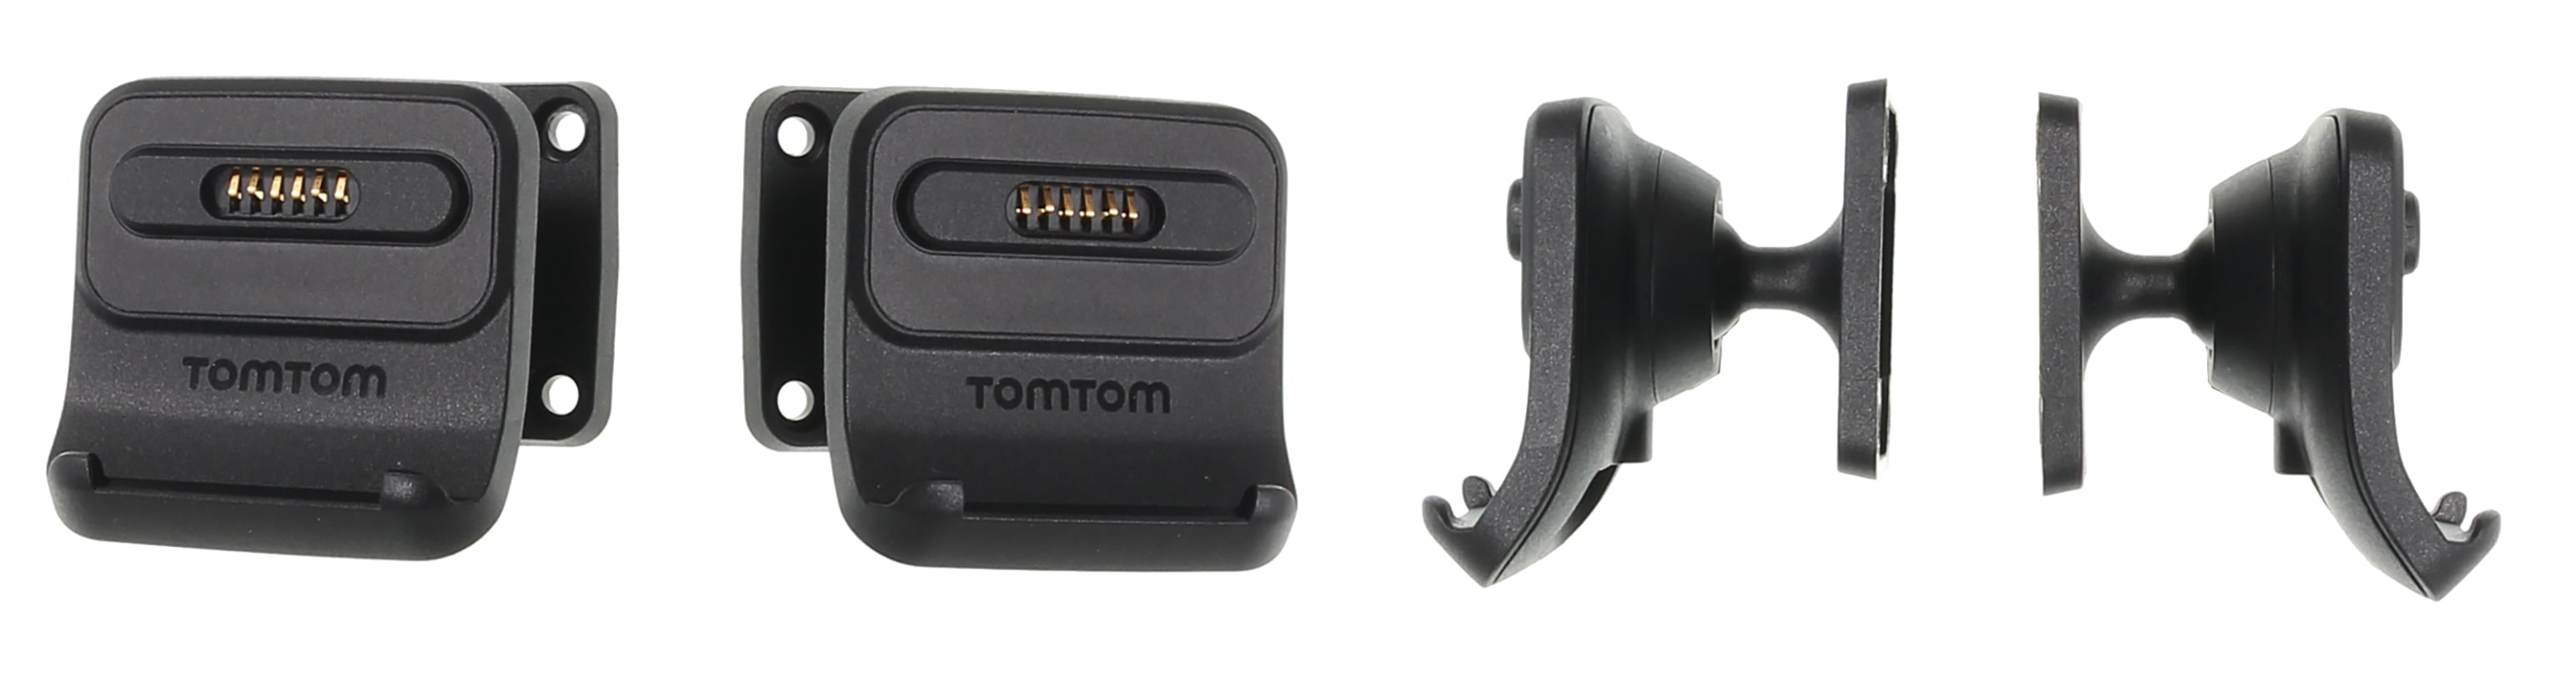 Active Dock Holder with Tilt Swivel for TomTom GO Professional 520